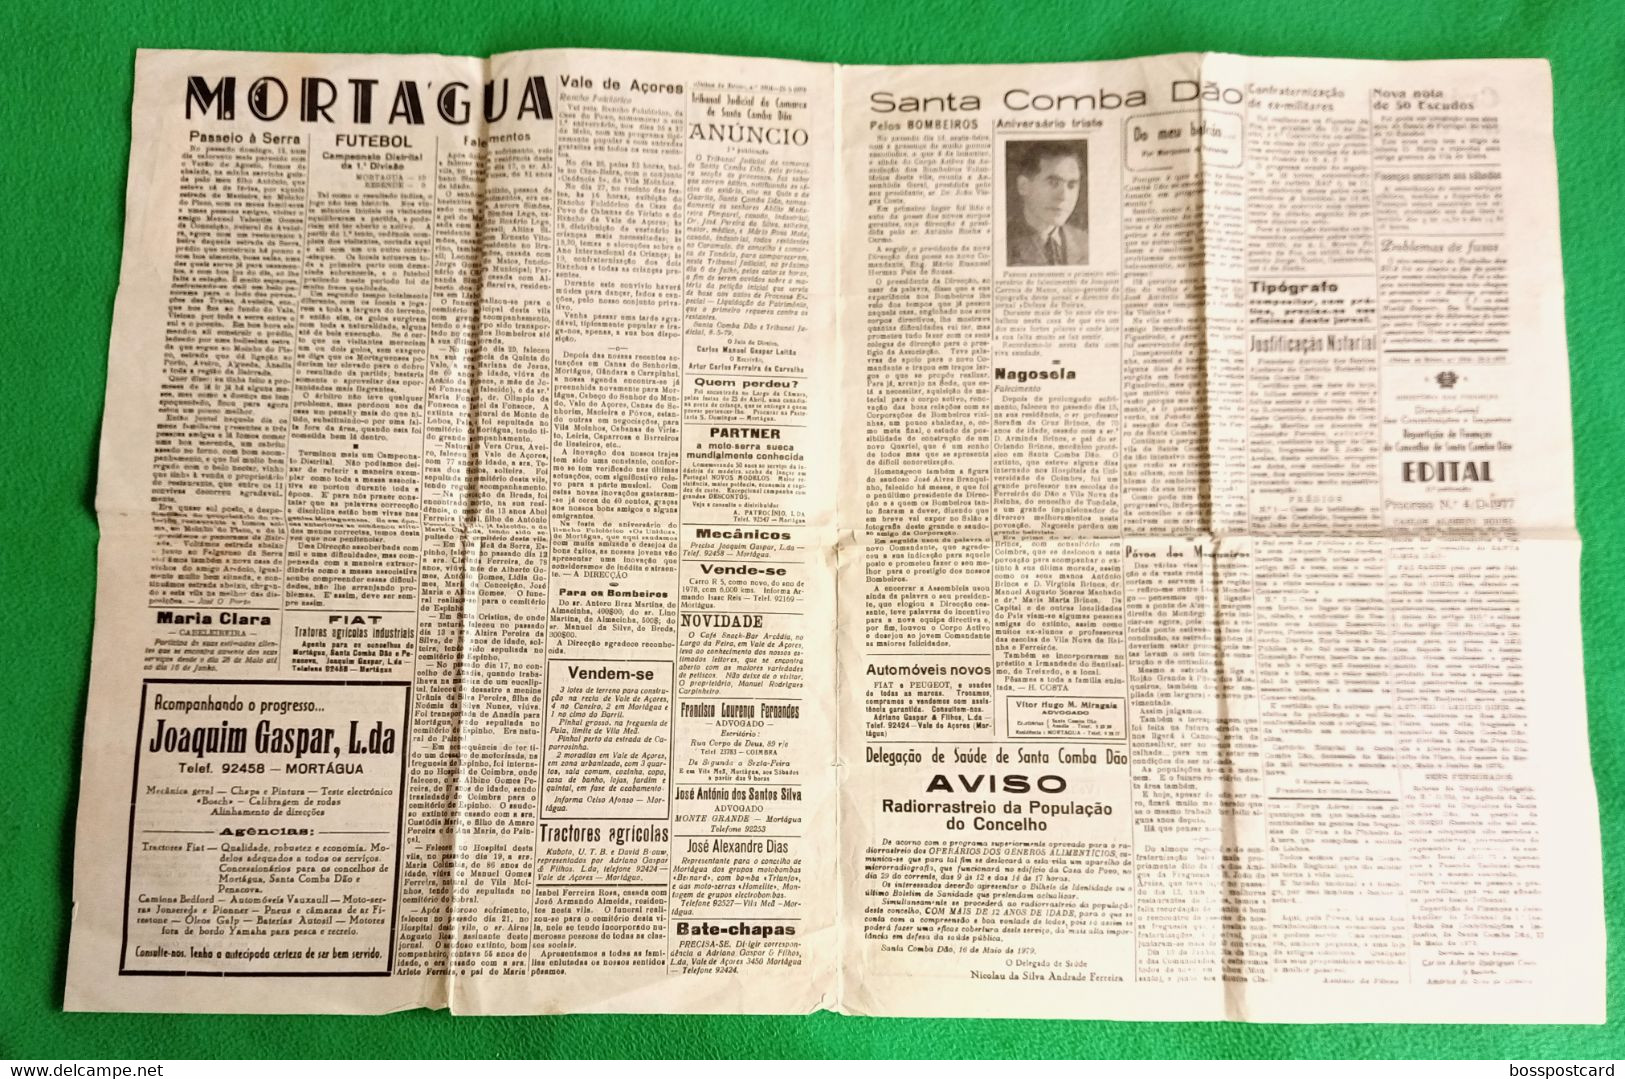 Santa Comba Dão - Jornal "Defesa Da Beira" Nº 1916, 25 De Maio De 1979 - Imprensa. Tábua. Mortágua. Viseu. Portugal. - Algemene Informatie